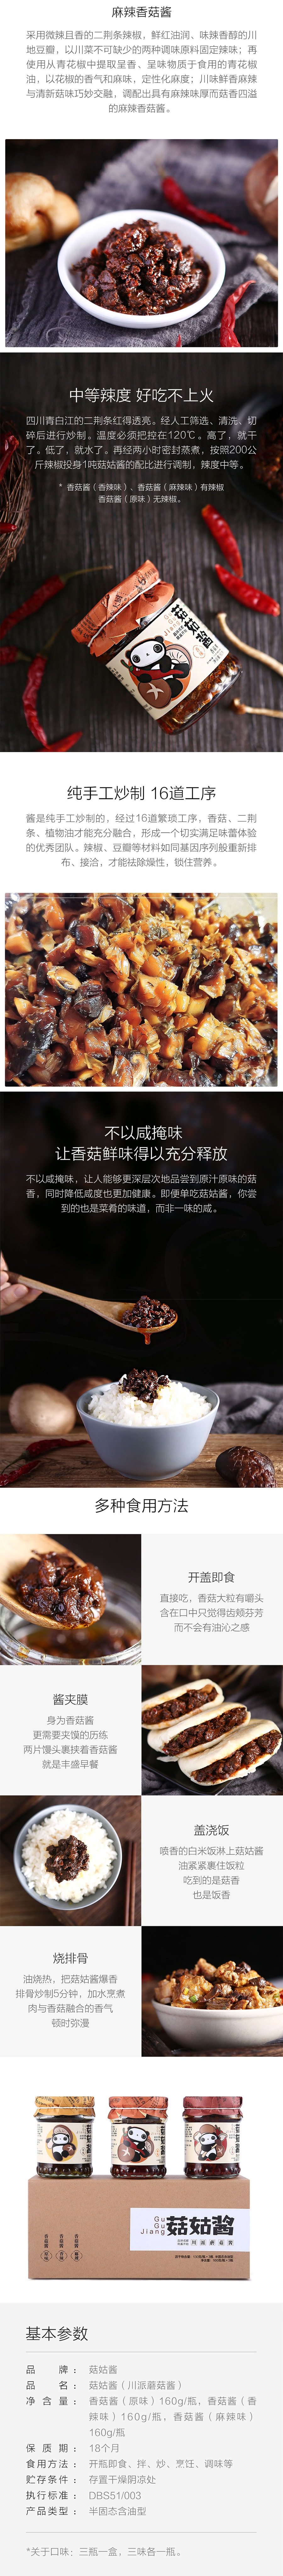 XIAOMI YOUPIN GU GU JIANG Mushroom Source 3 Flavor Combination 160g*3